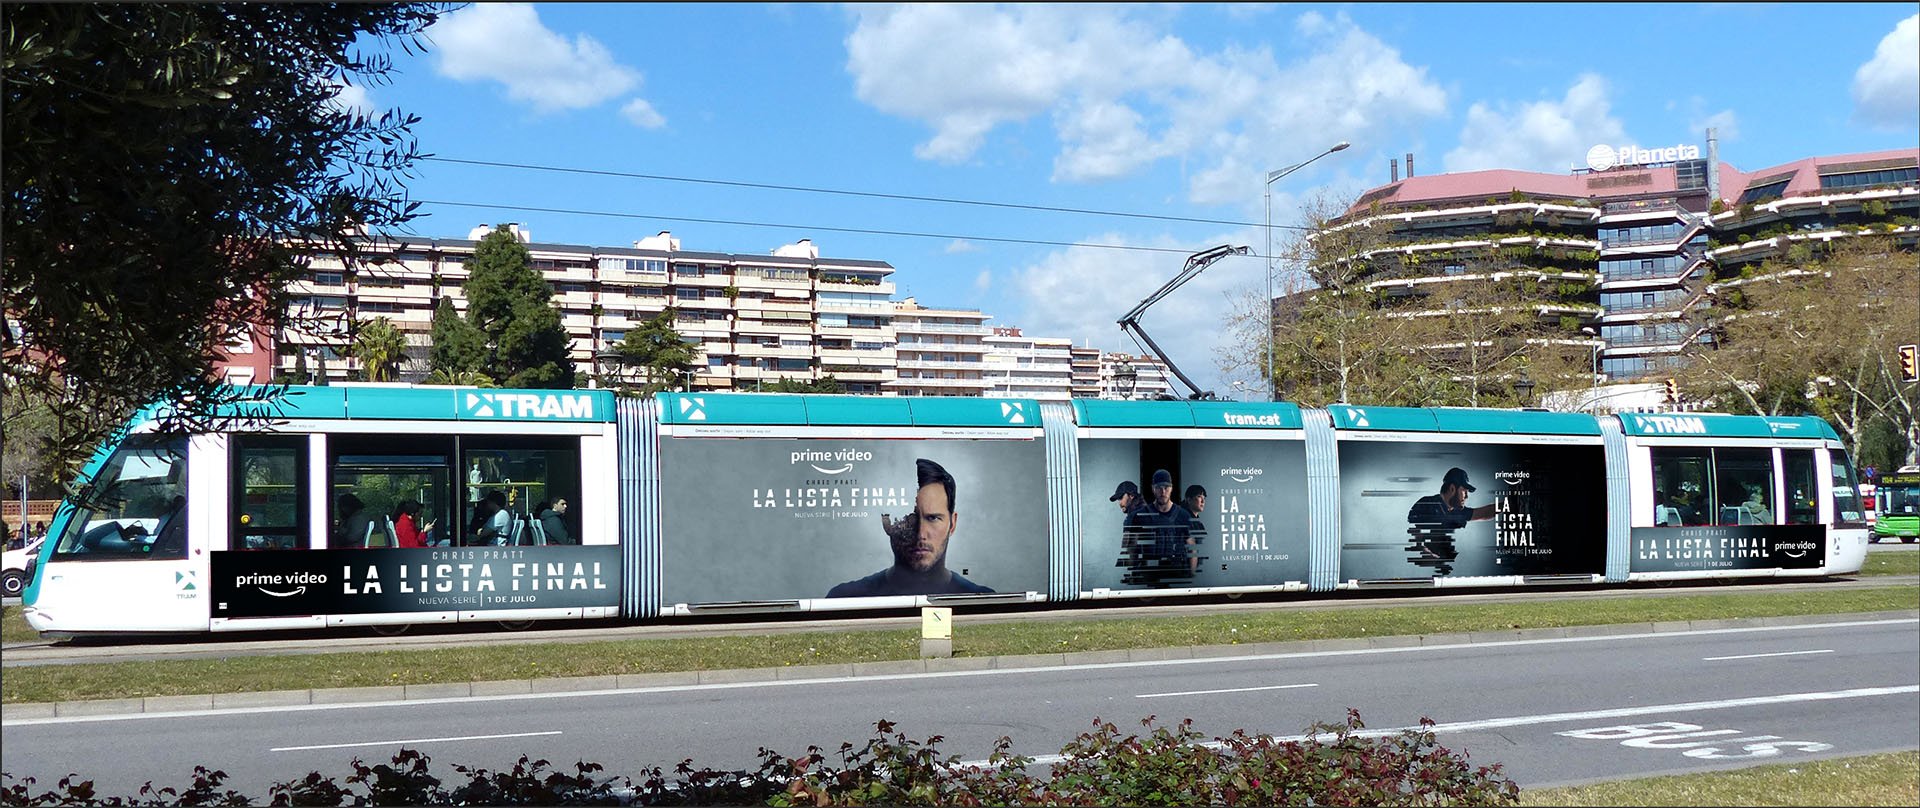 Barcelona tram campaign insitu 1_S.jpg